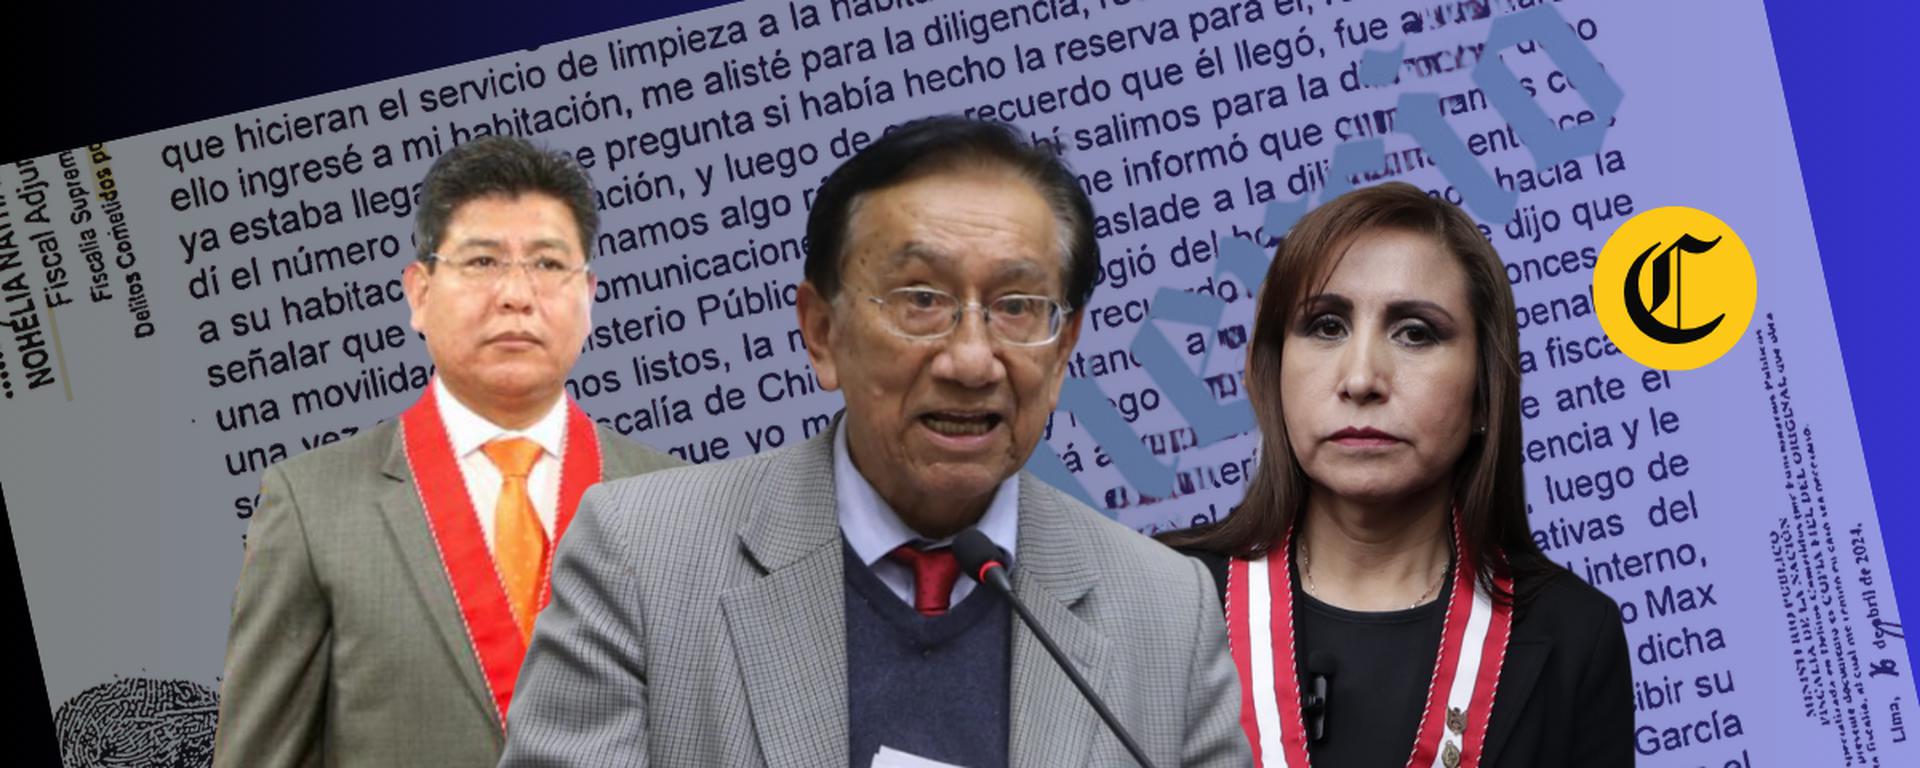 Patricia Benavides: Las contradicciones de los fiscales sobre el presunto favorecimiento al congresista José María Balcázar